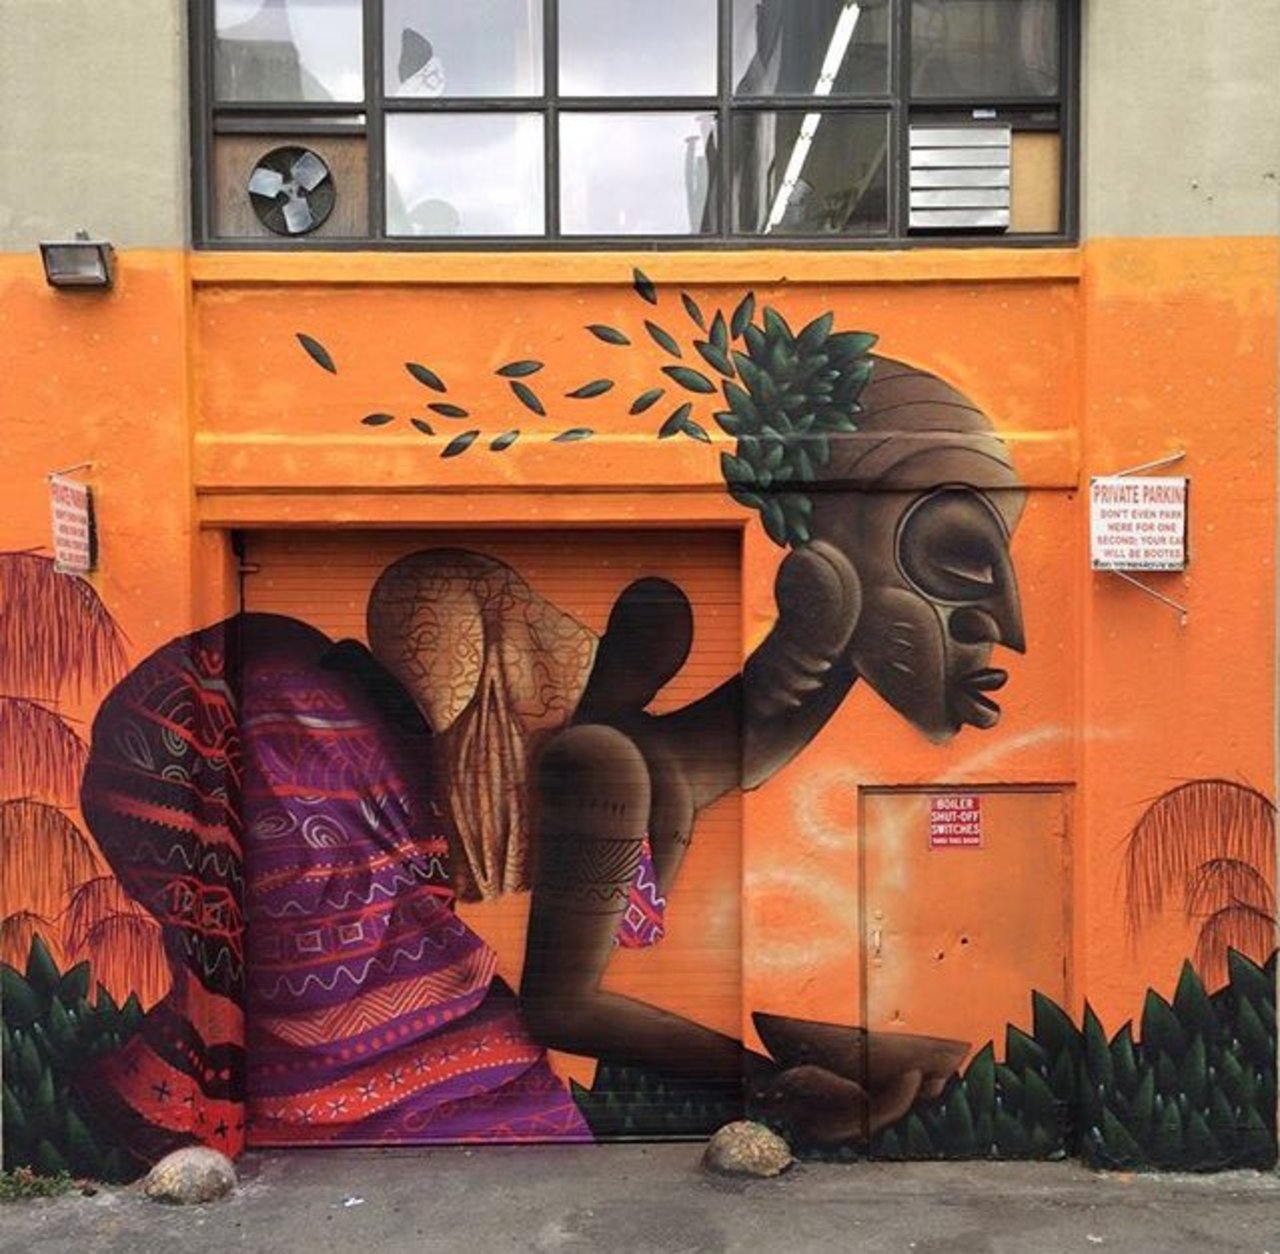 New Street Art by Alexandre Keto in NYC 

#art #graffiti #mural #streetart https://t.co/ZevOegL0Hb